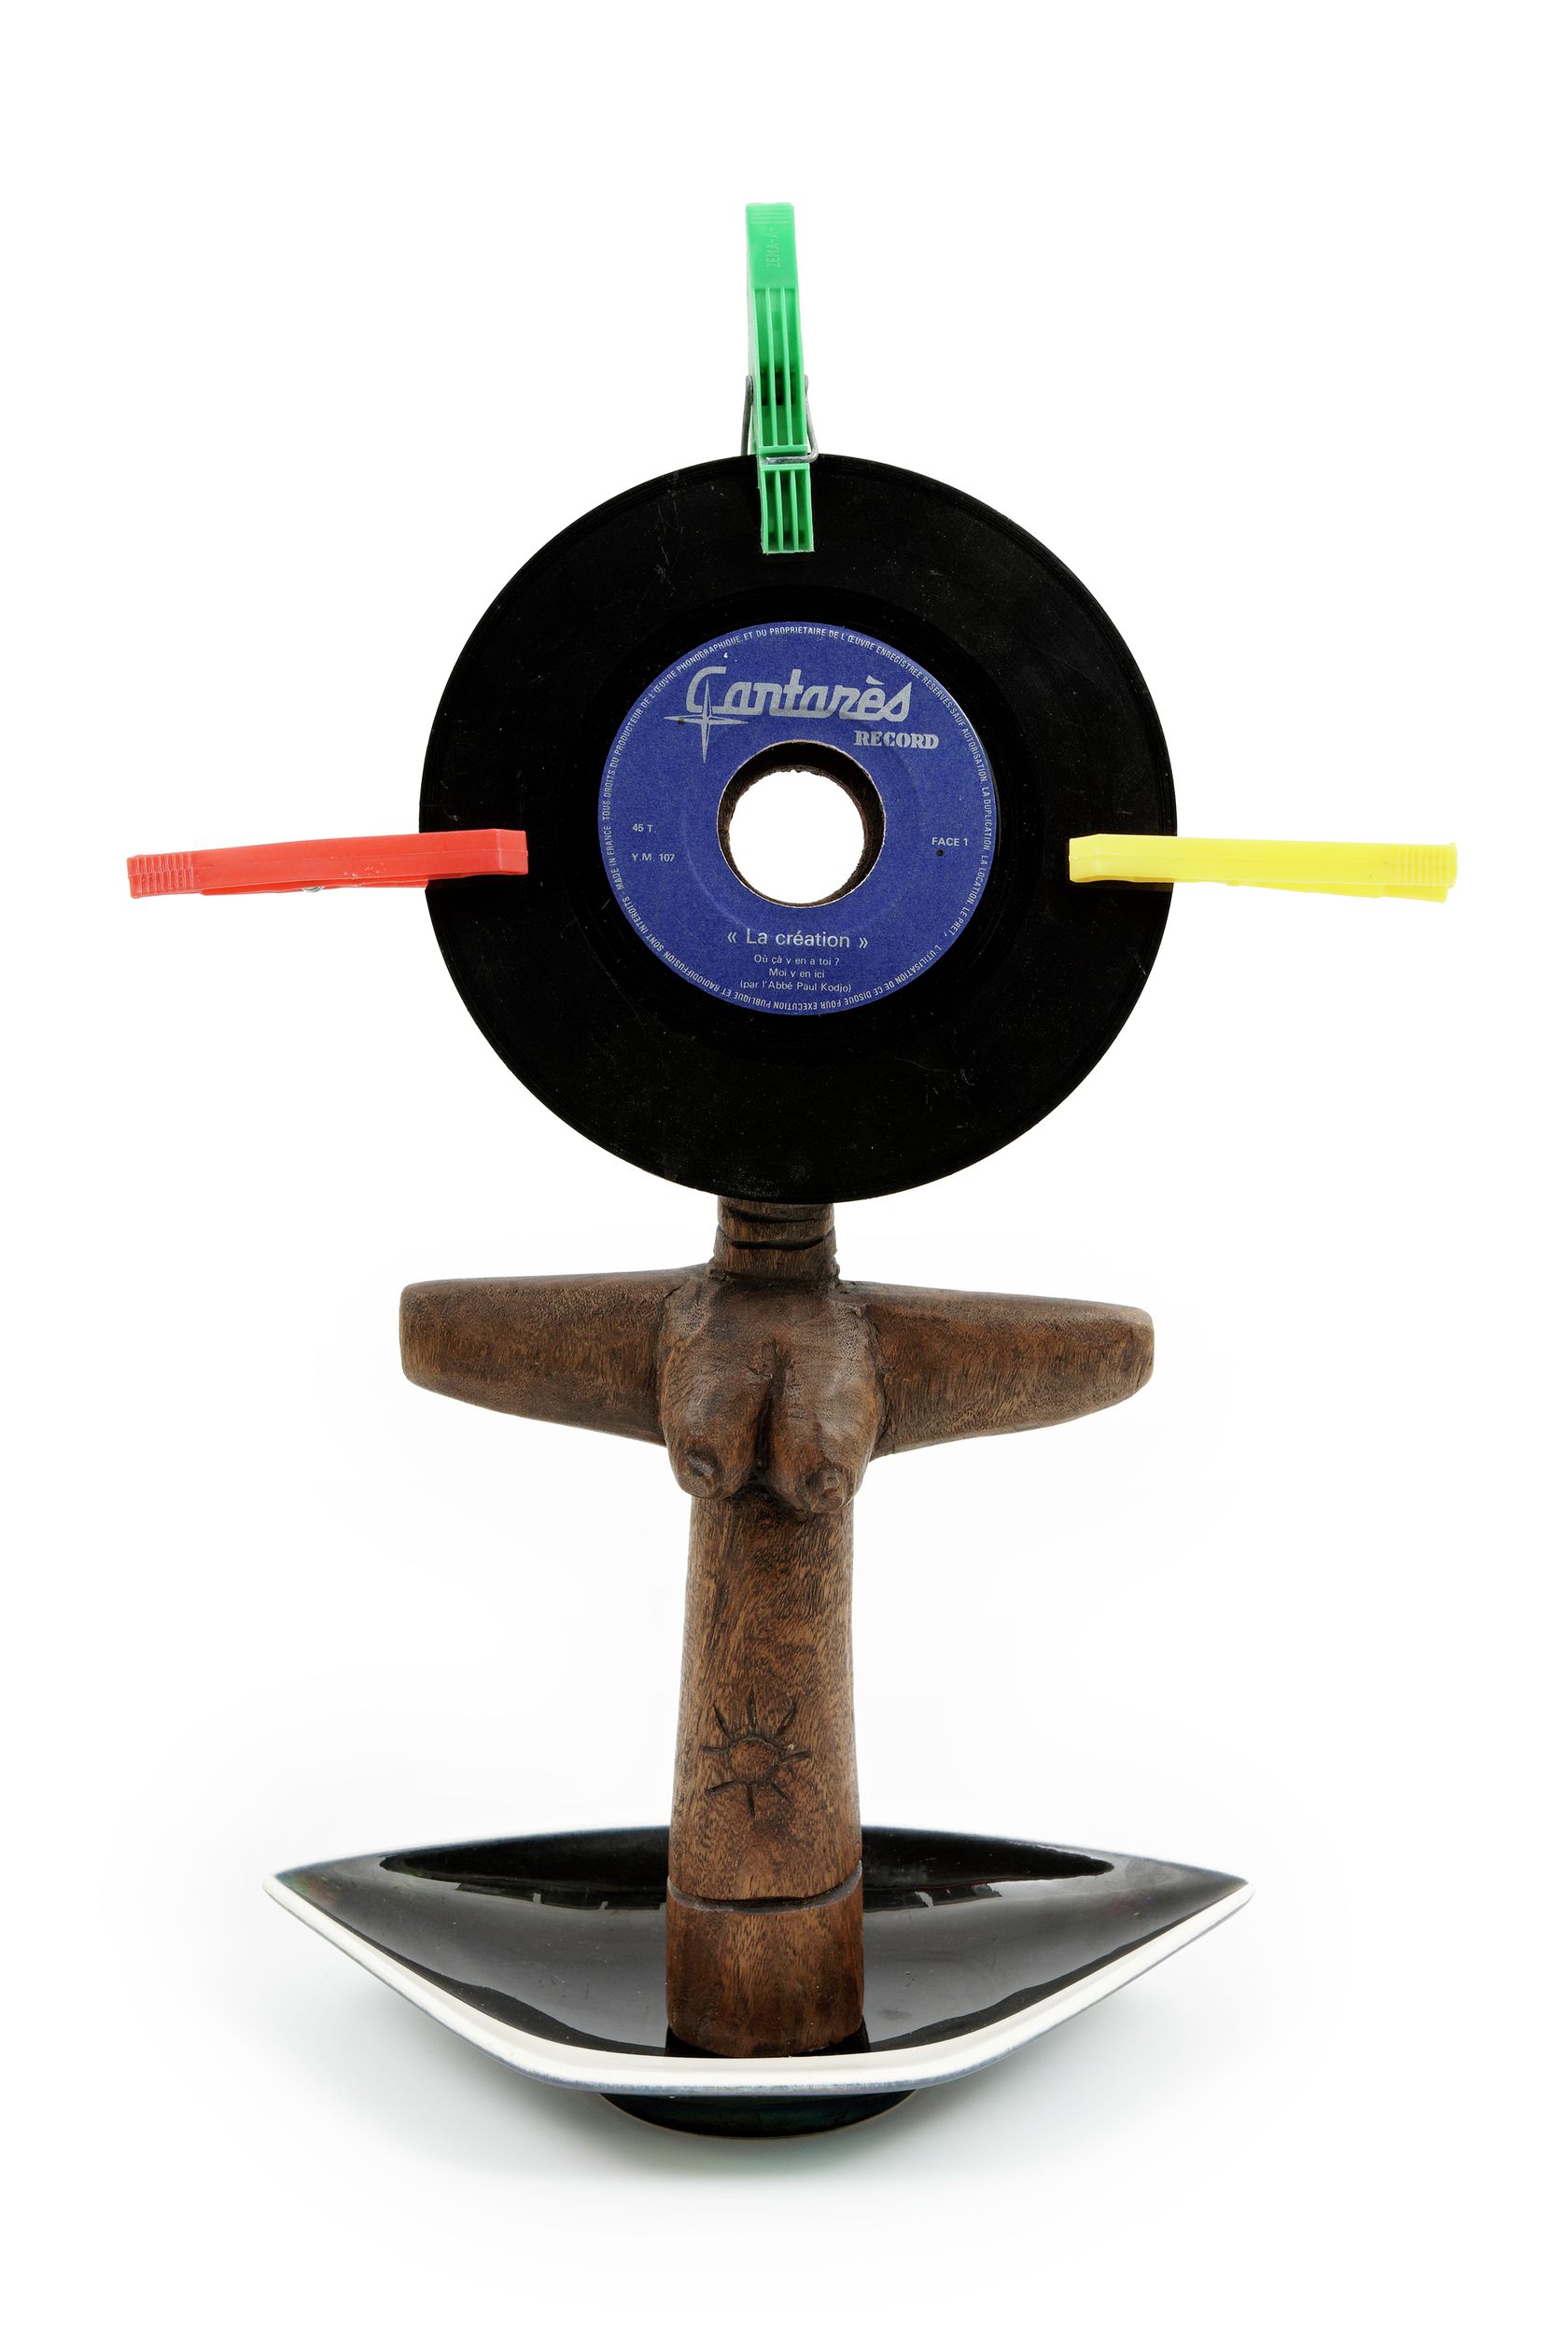 Présence Panchounette, Ashanti de faire votre connaissance, 1985 Statue en bois exotique, cendrier en faïence, disque vinyl 45tr (la création du père Kodjo) et pinces à linge44 × 30 × 10 cm / 17 3/8 × 11 6/8 × 3 7/8 in.